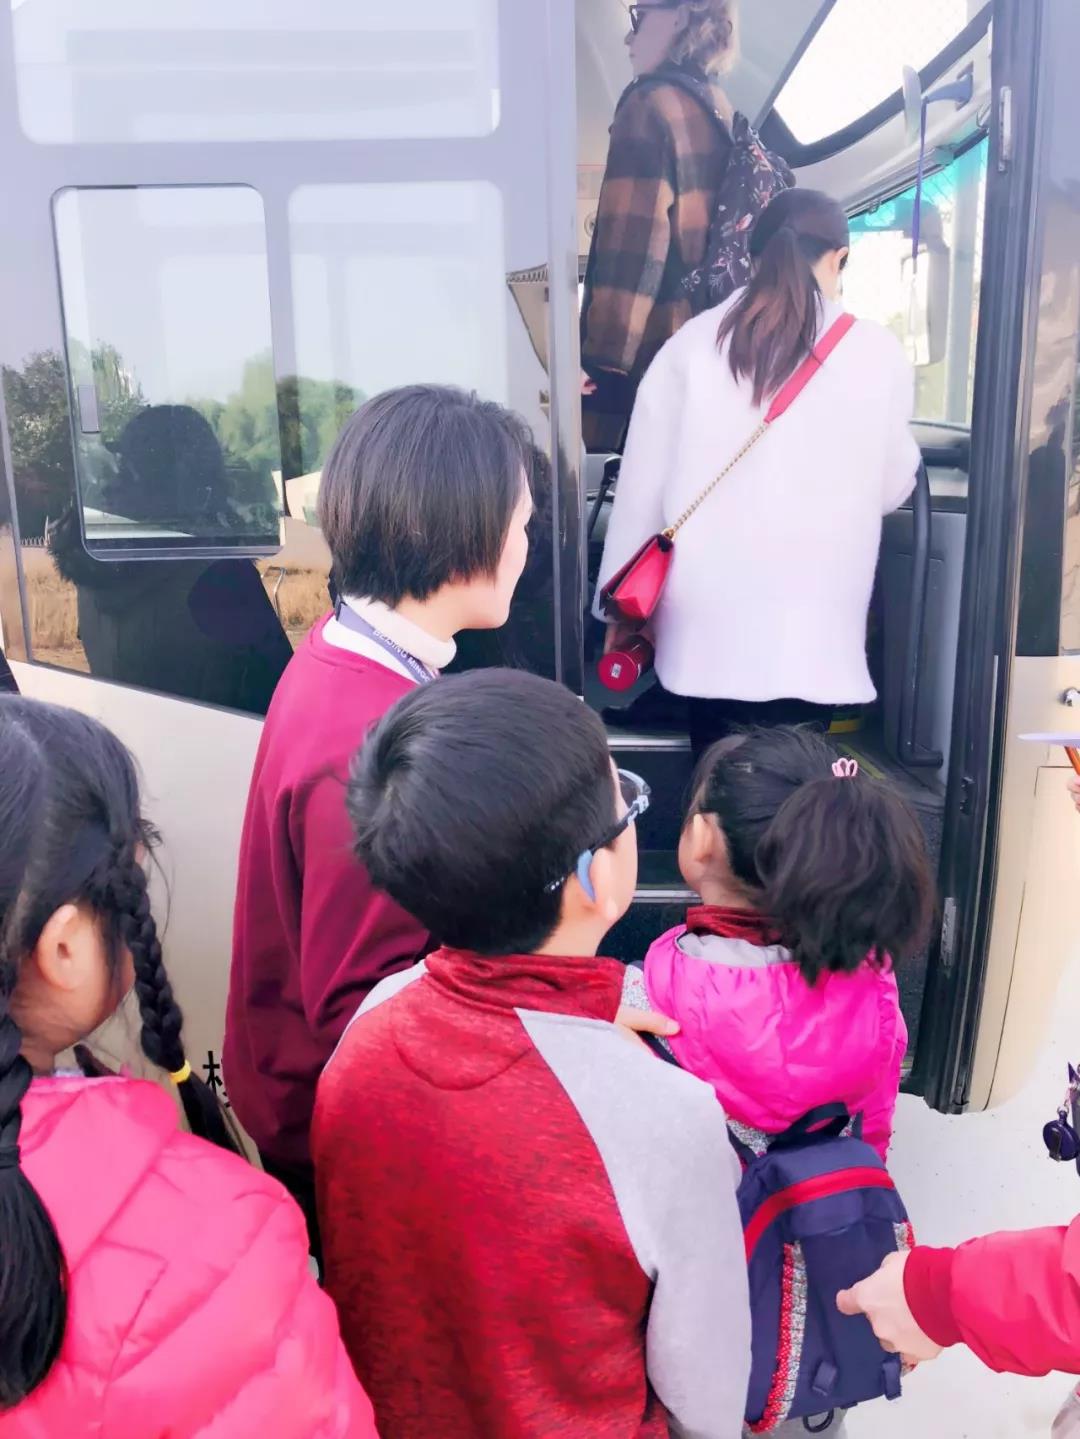 北京明诚外国语学校 秋游活动 | 善良的心灵永不过期